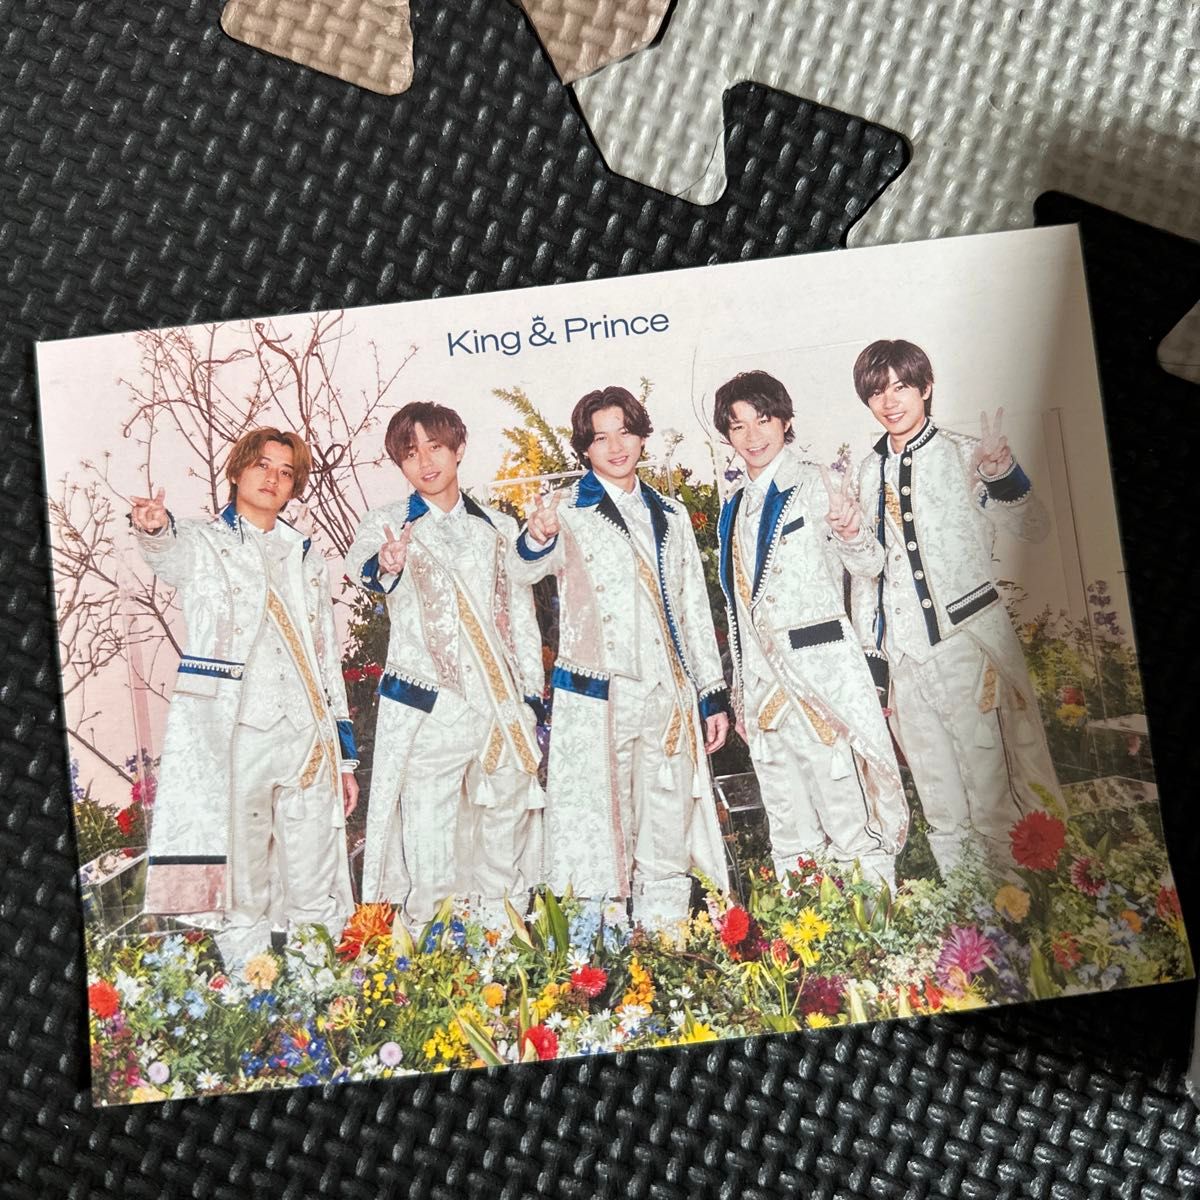 初回盤A (初回仕様) DVD付 King & Prince 2CD+DVD/Mr.5 23/4/19発売  ポストカード付けます